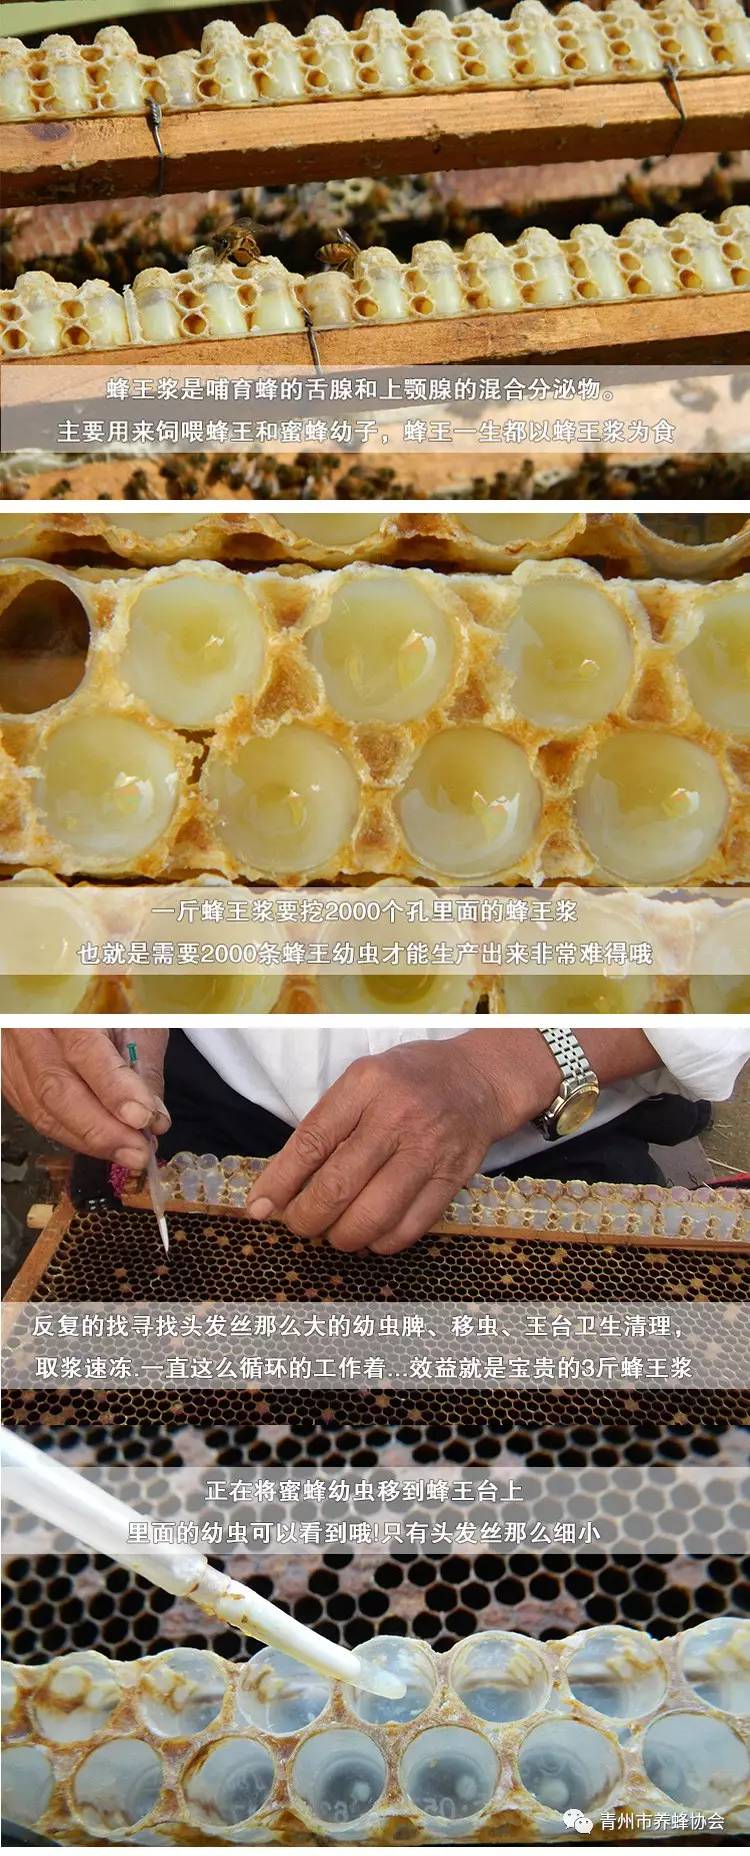 蜂蜜宣传广告 吃蜂蜜有什么好处 白米酒加蜂蜜 柠檬蜂蜜保存多久 金桔蜂蜜茶